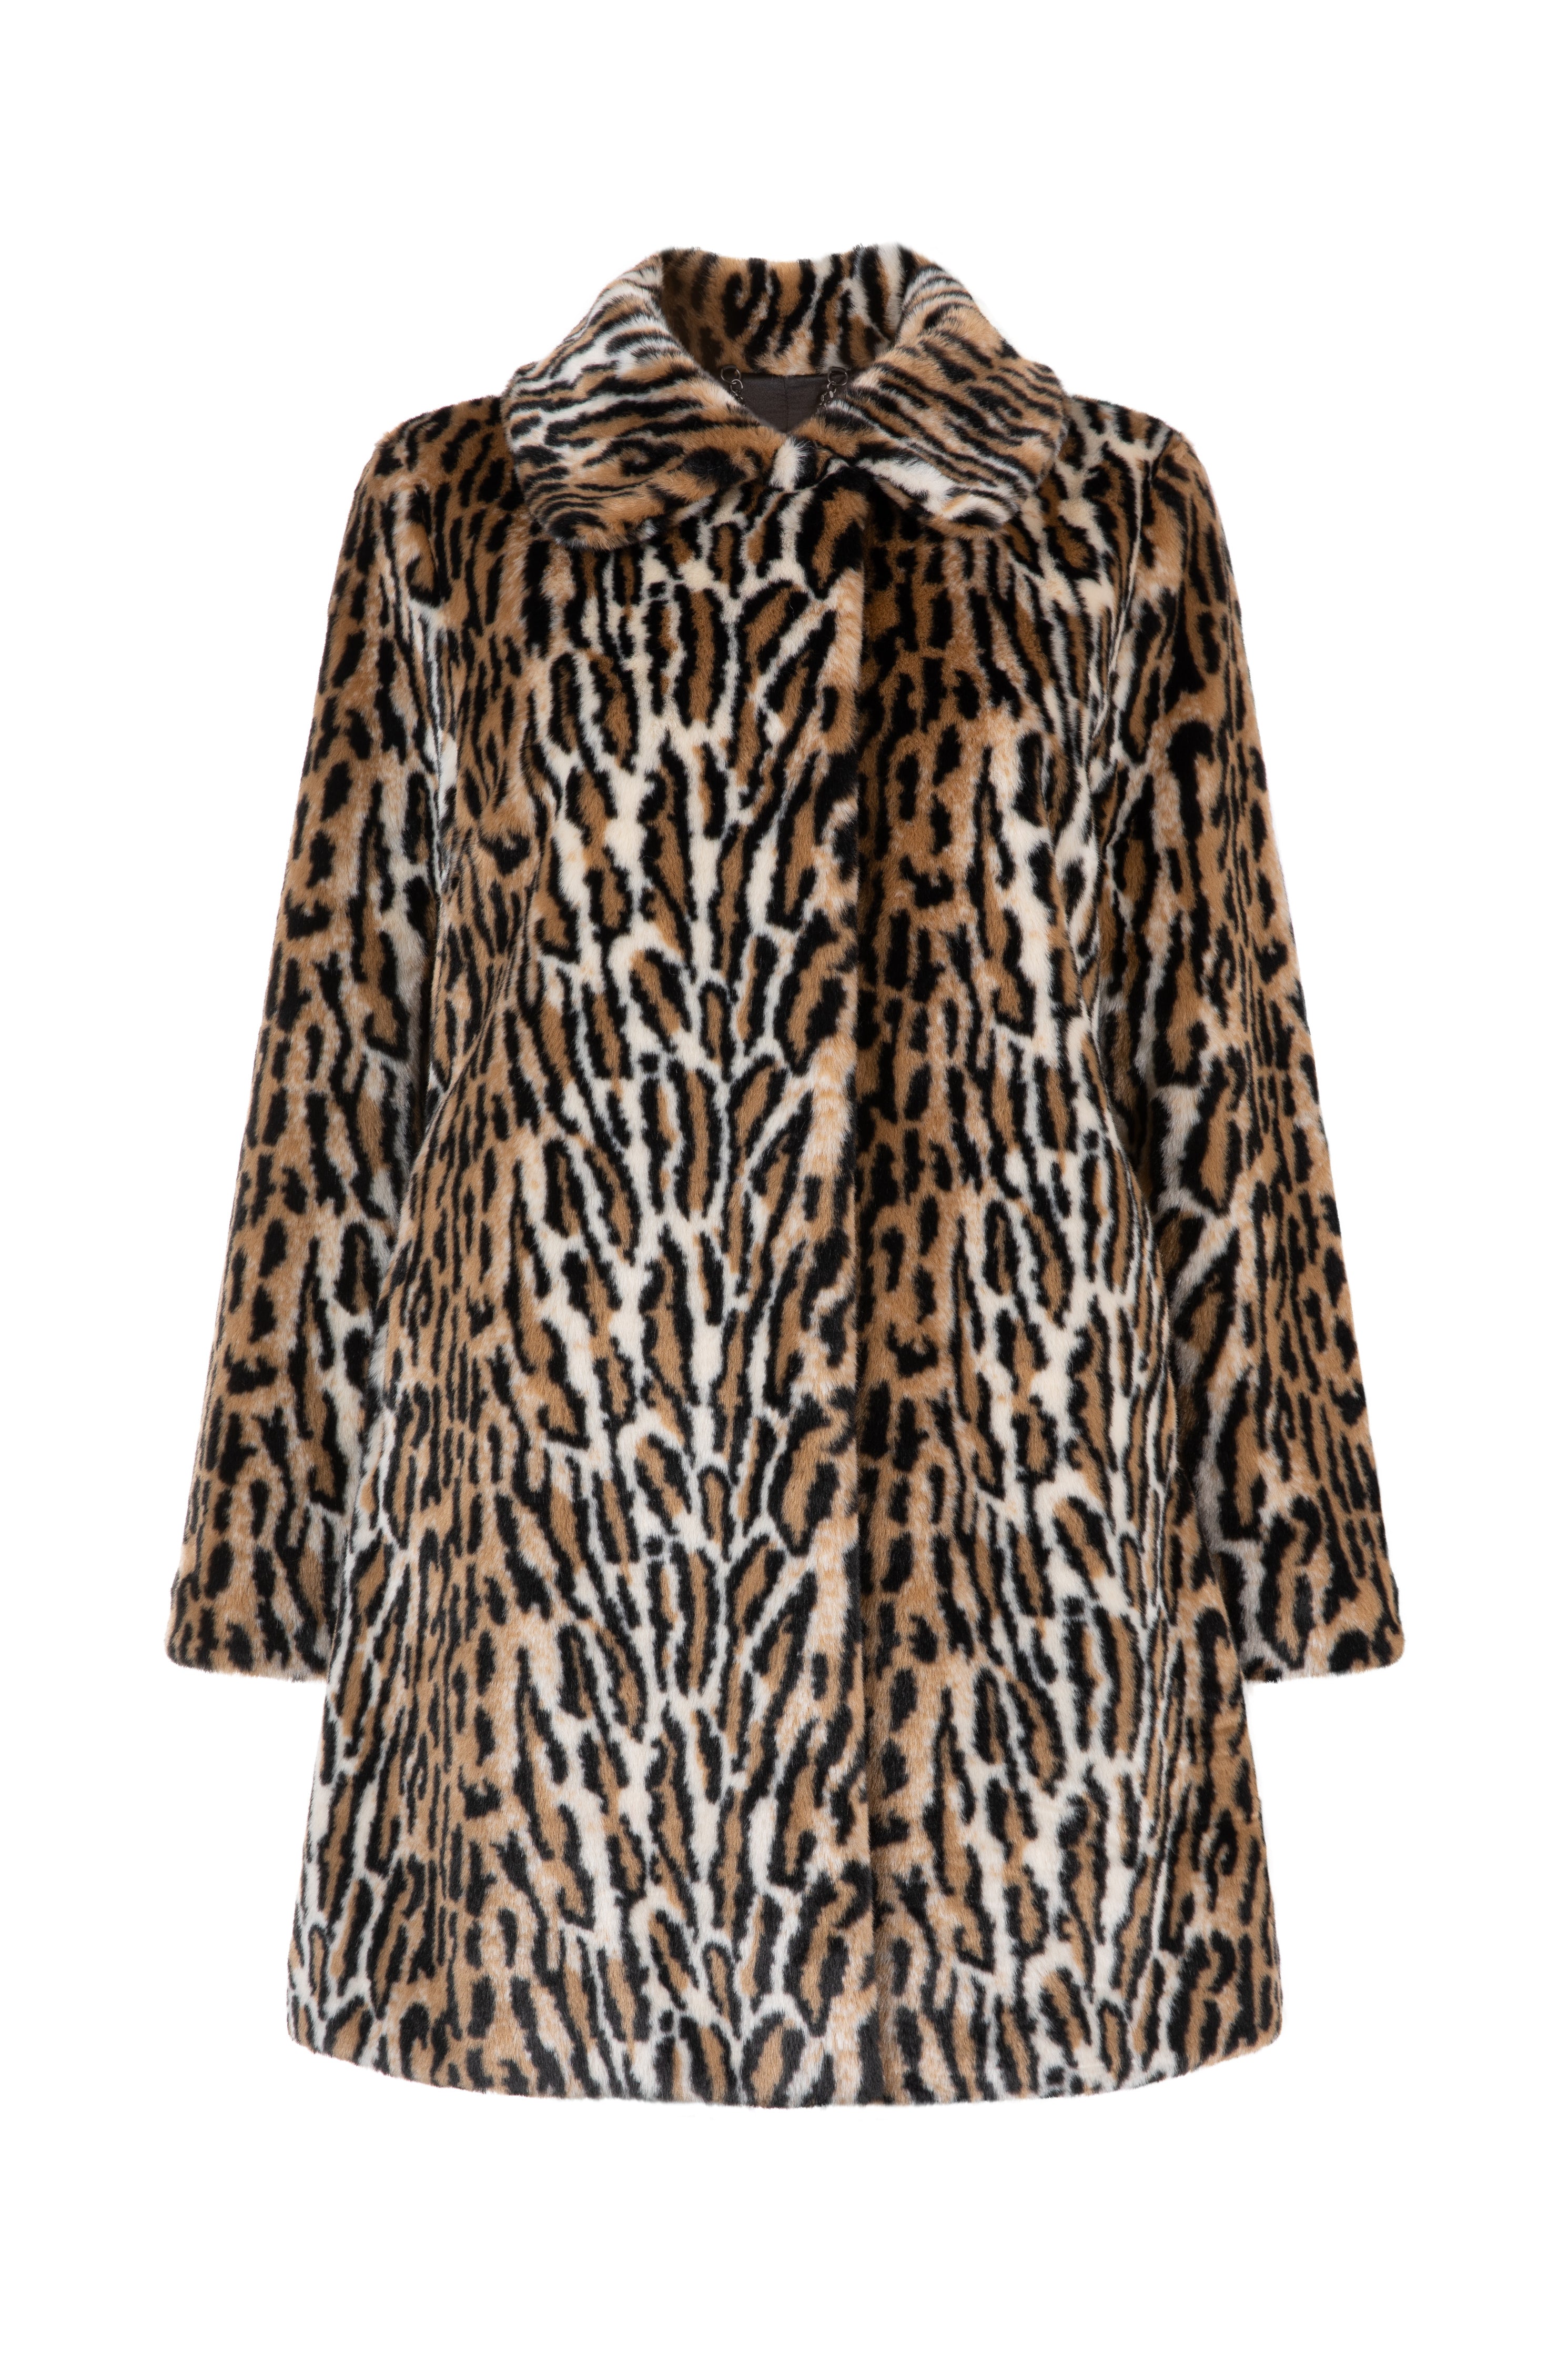 Issy London Women's Neutrals Adele Leopard Faux Fur Coat In Animal Print